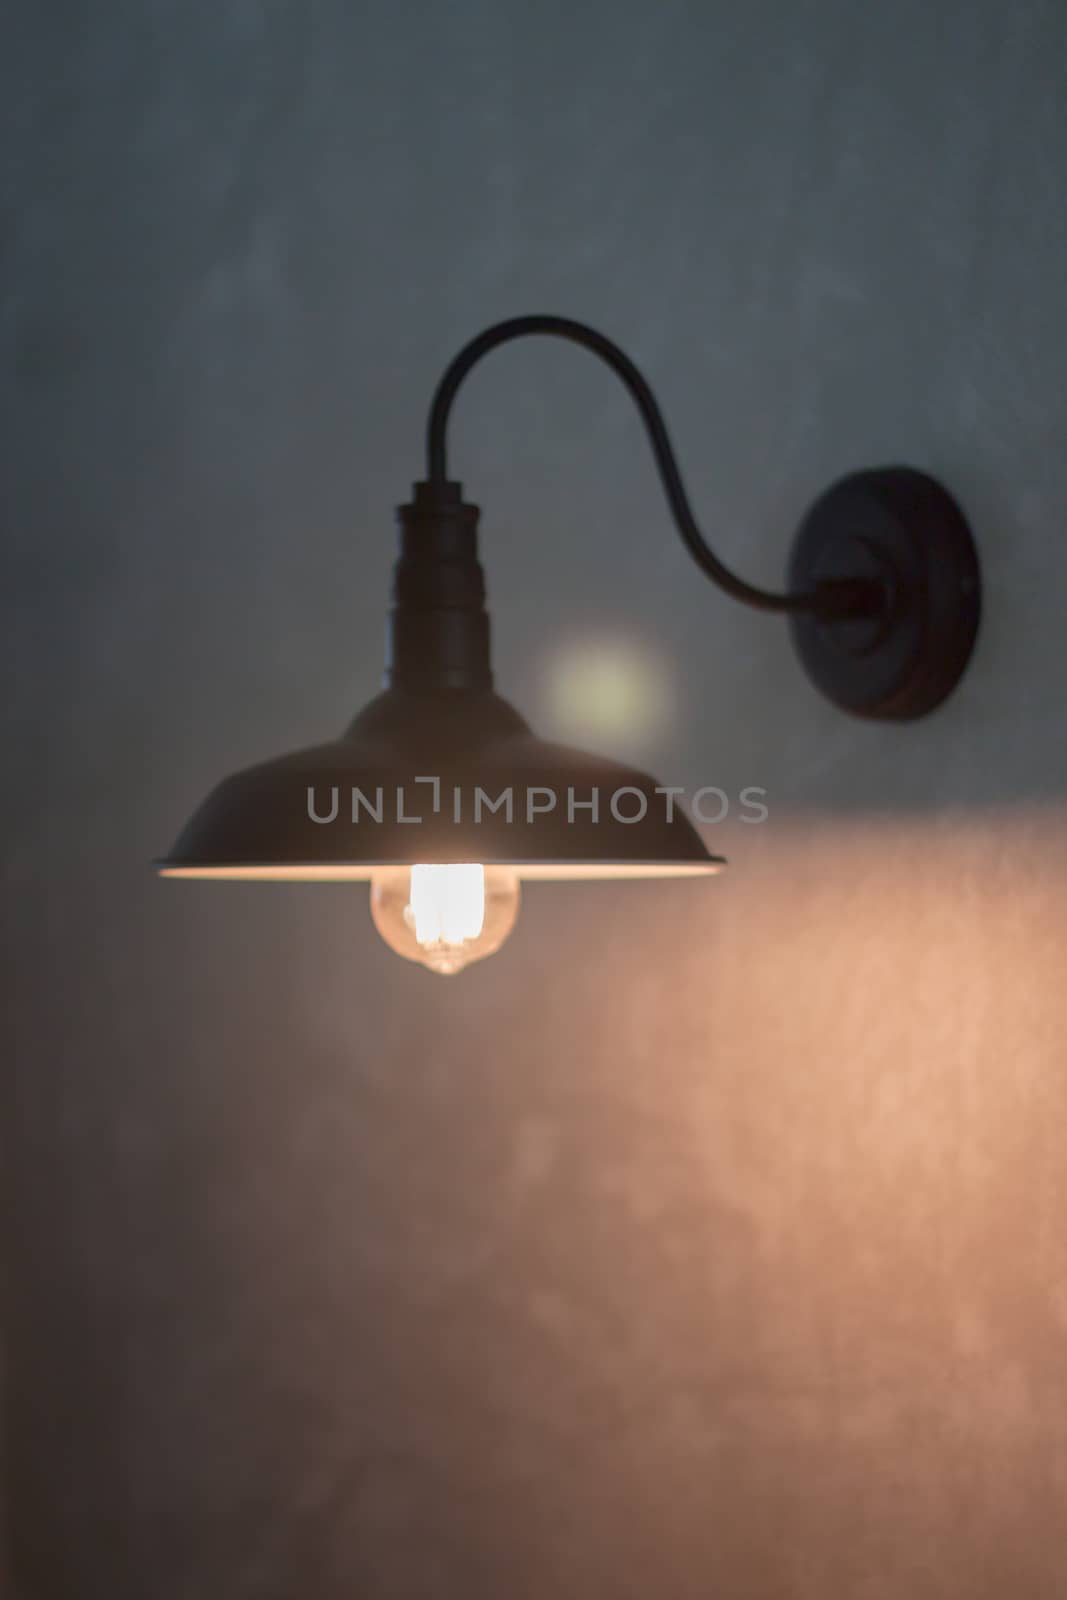 Metal lighting lamp on the wall by punsayaporn